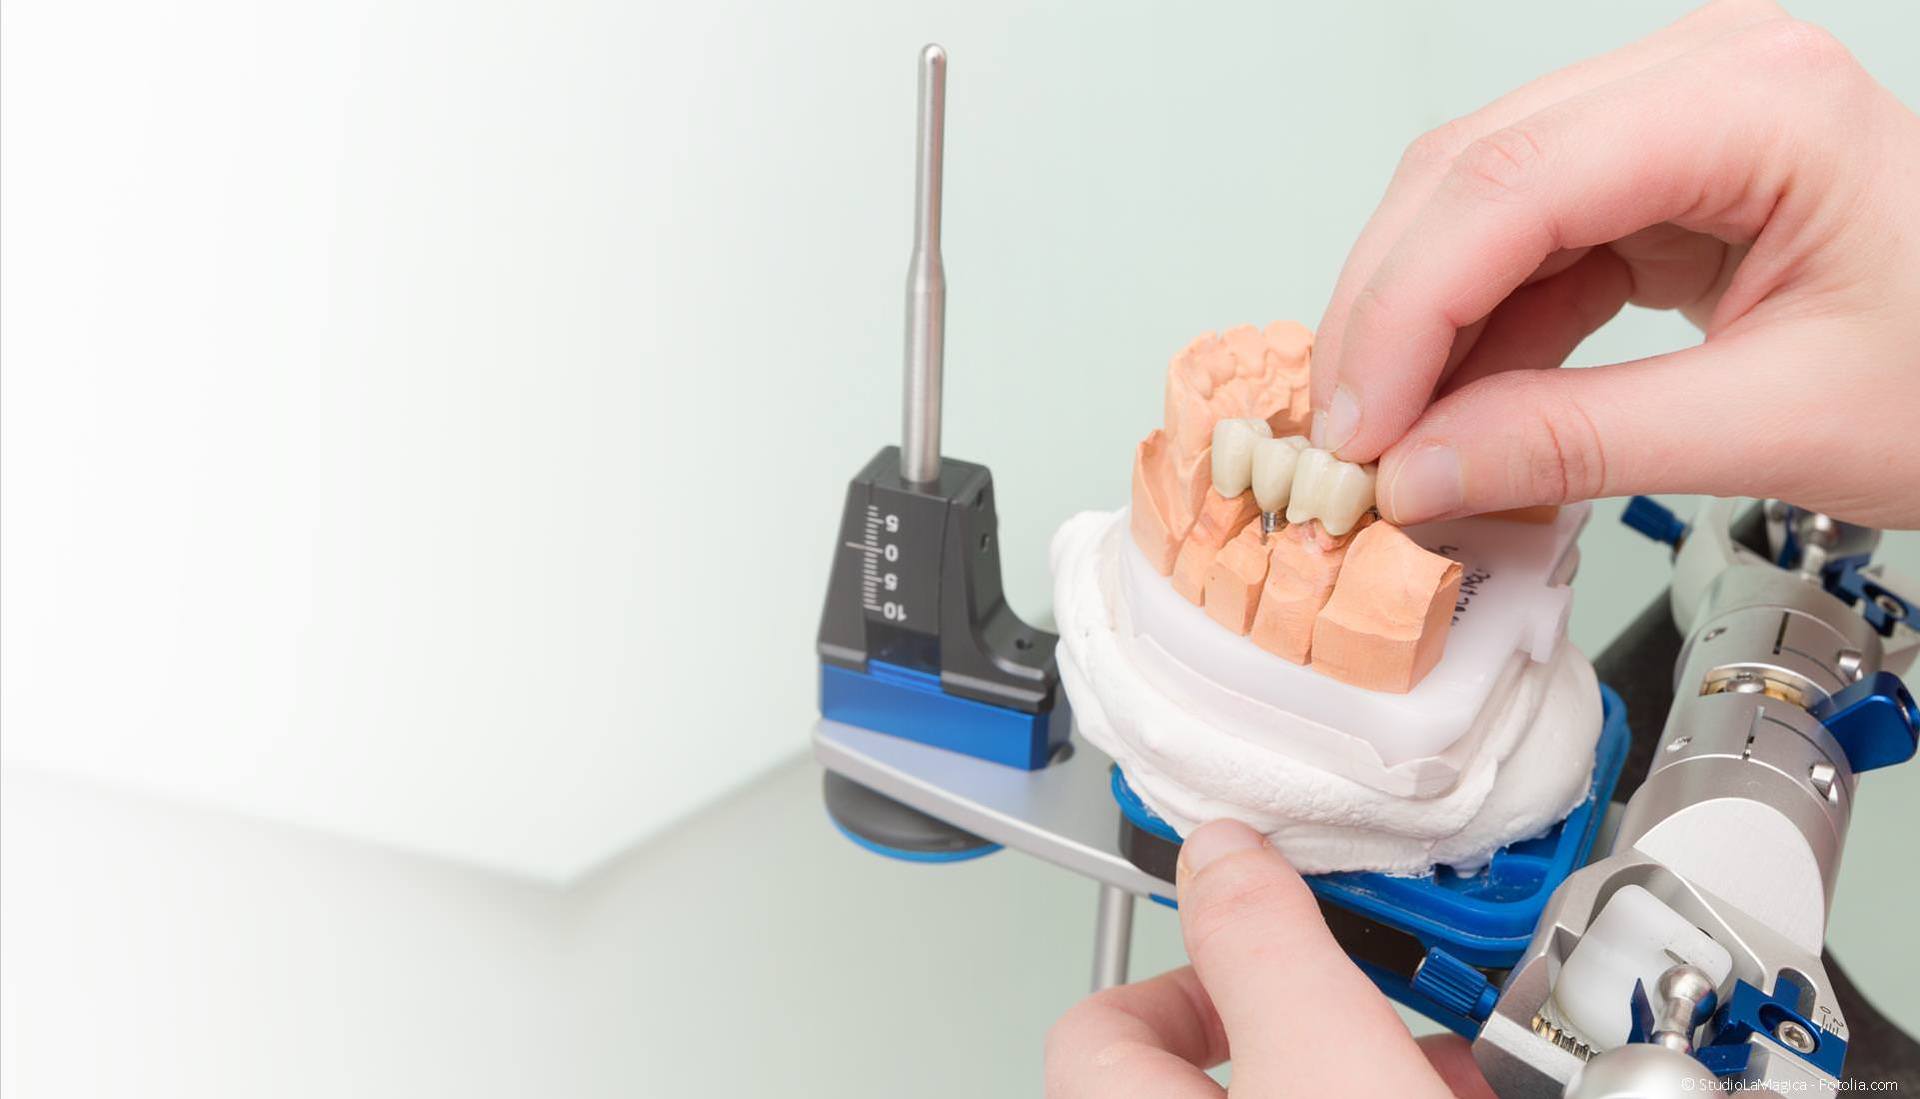 Zahntechnik: Zahnersatz-Herstellung im Dentallabor